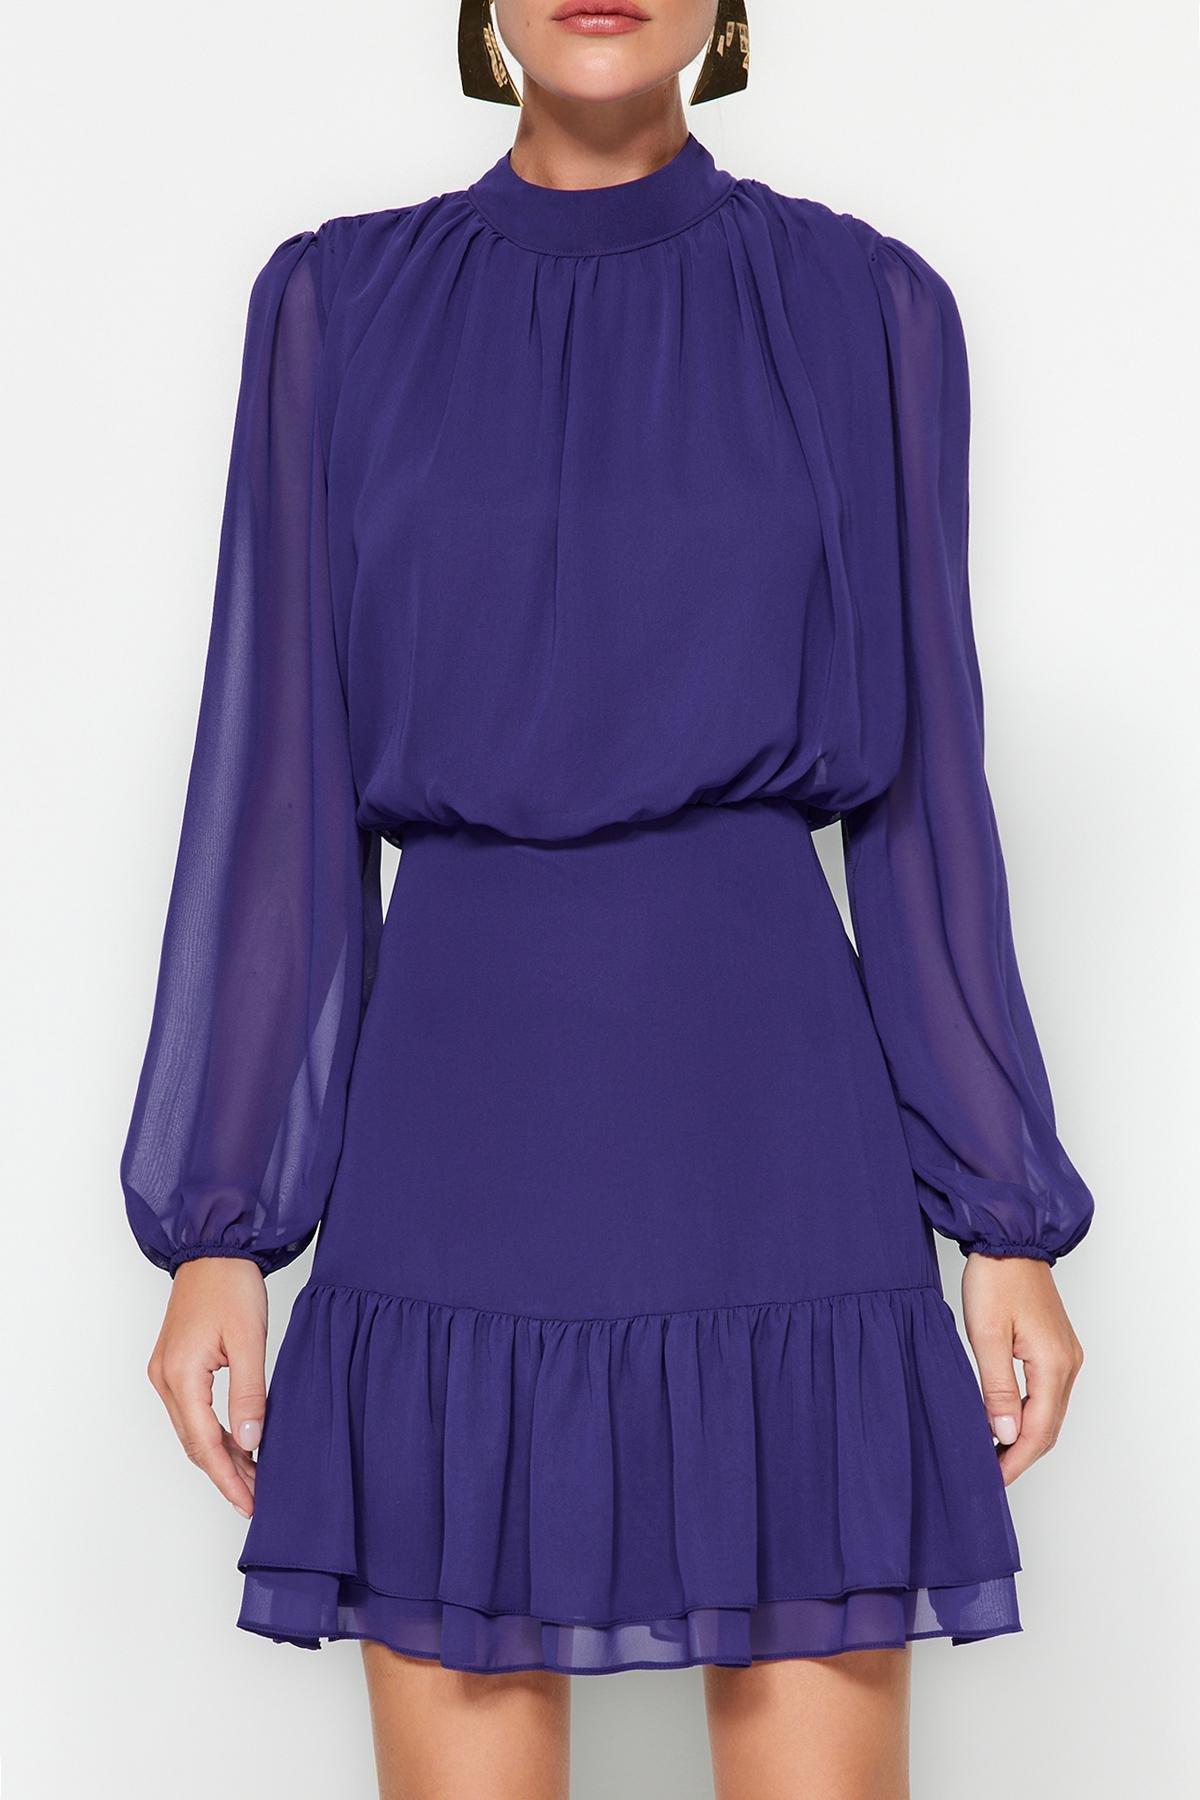 Trendyol - Purple Knitted Dress